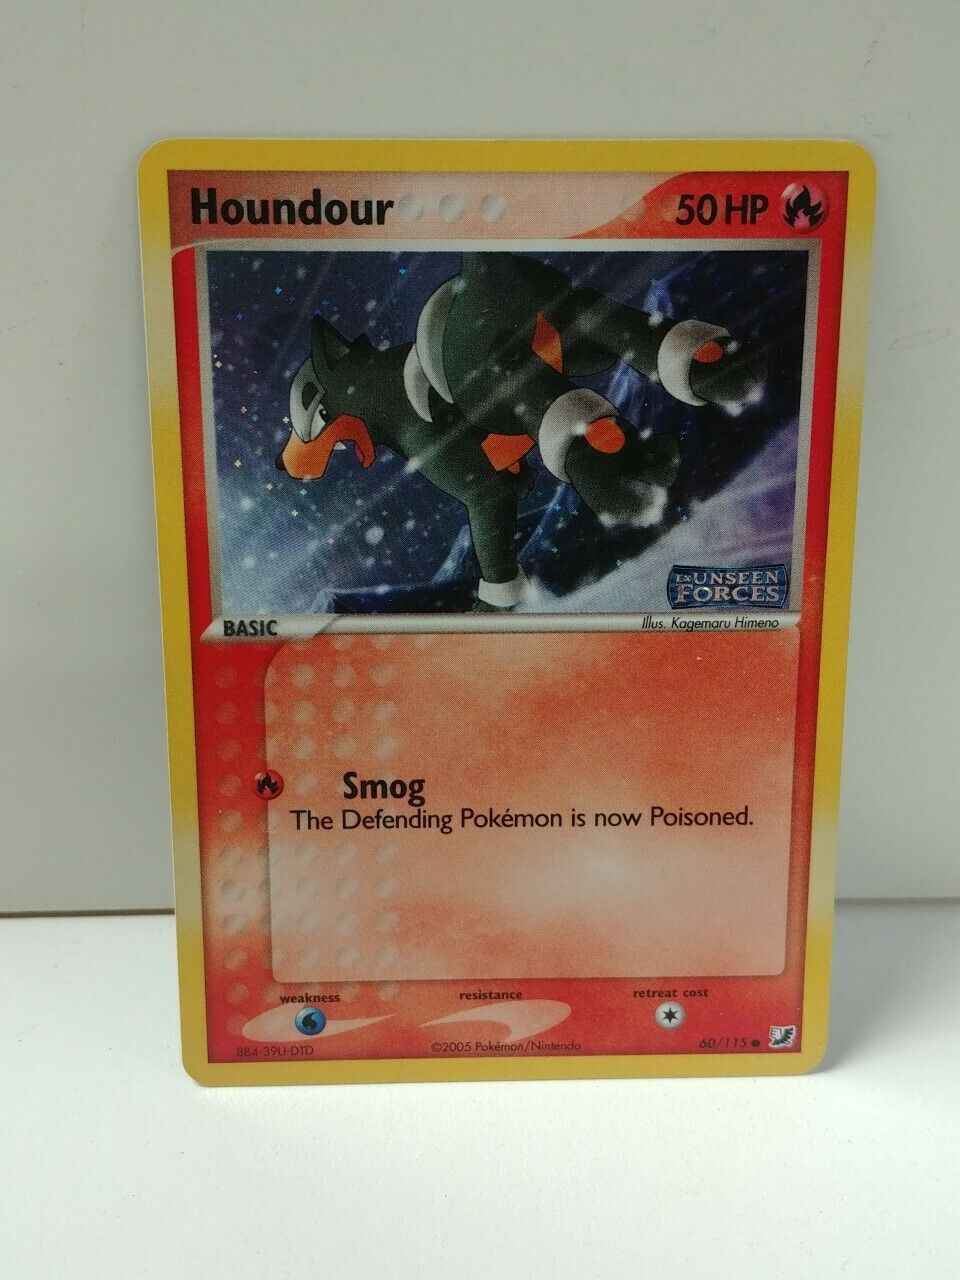 Pokemon Holo HOUNDOUR 60/115 Basic NM CARD UNSEEN FORCES Logo 2005 - Image 1